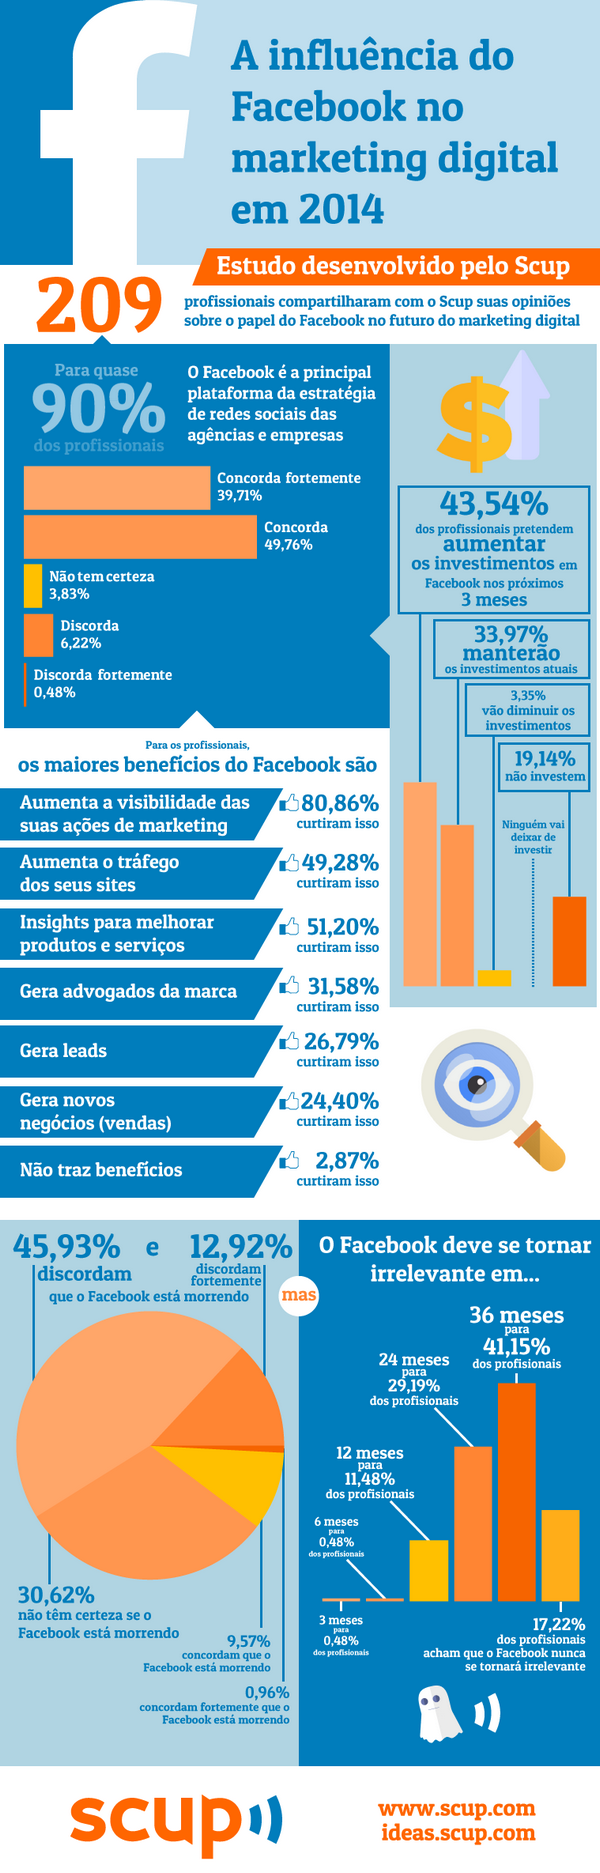 Influência do Facebook em 2014